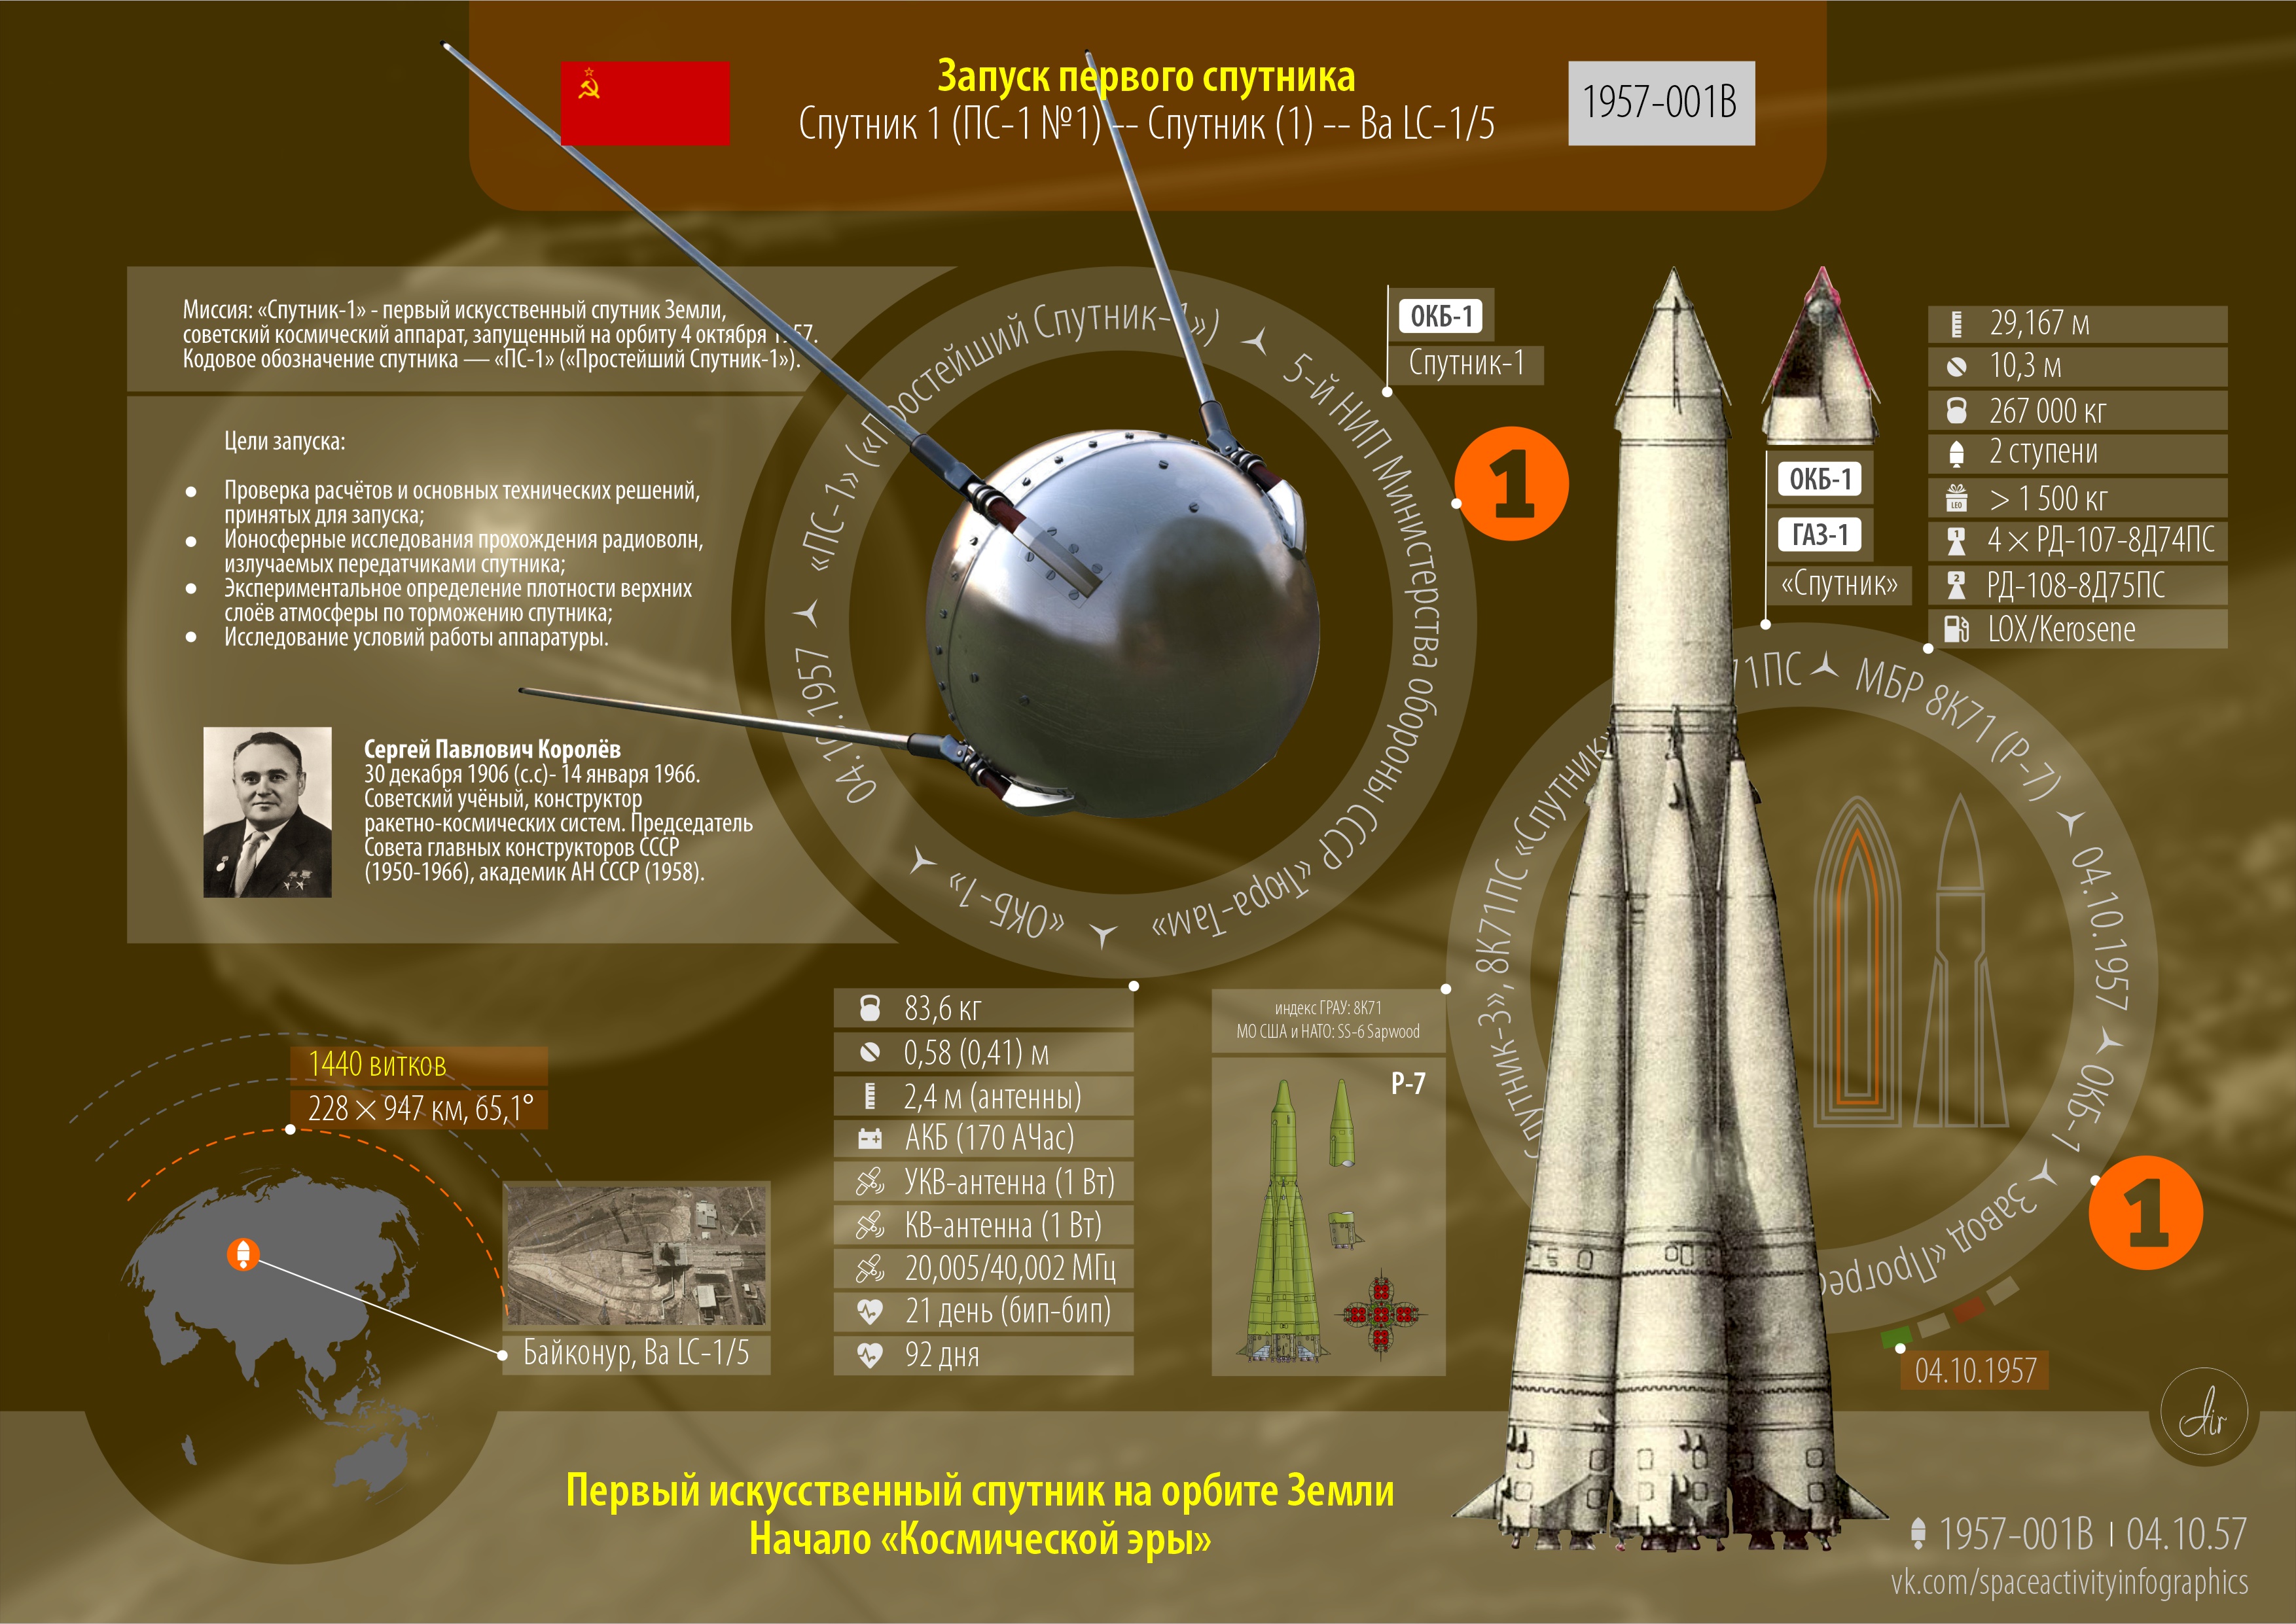 Дата запуска 1 спутника земли. Первый искусственный Спутник земли был запущен СССР 4 октября 1957 года.. Первый запуск спутника ПС 1. 1957 Год запуск первого искусственного спутника земли. 1957 Год запуск спутника СССР.